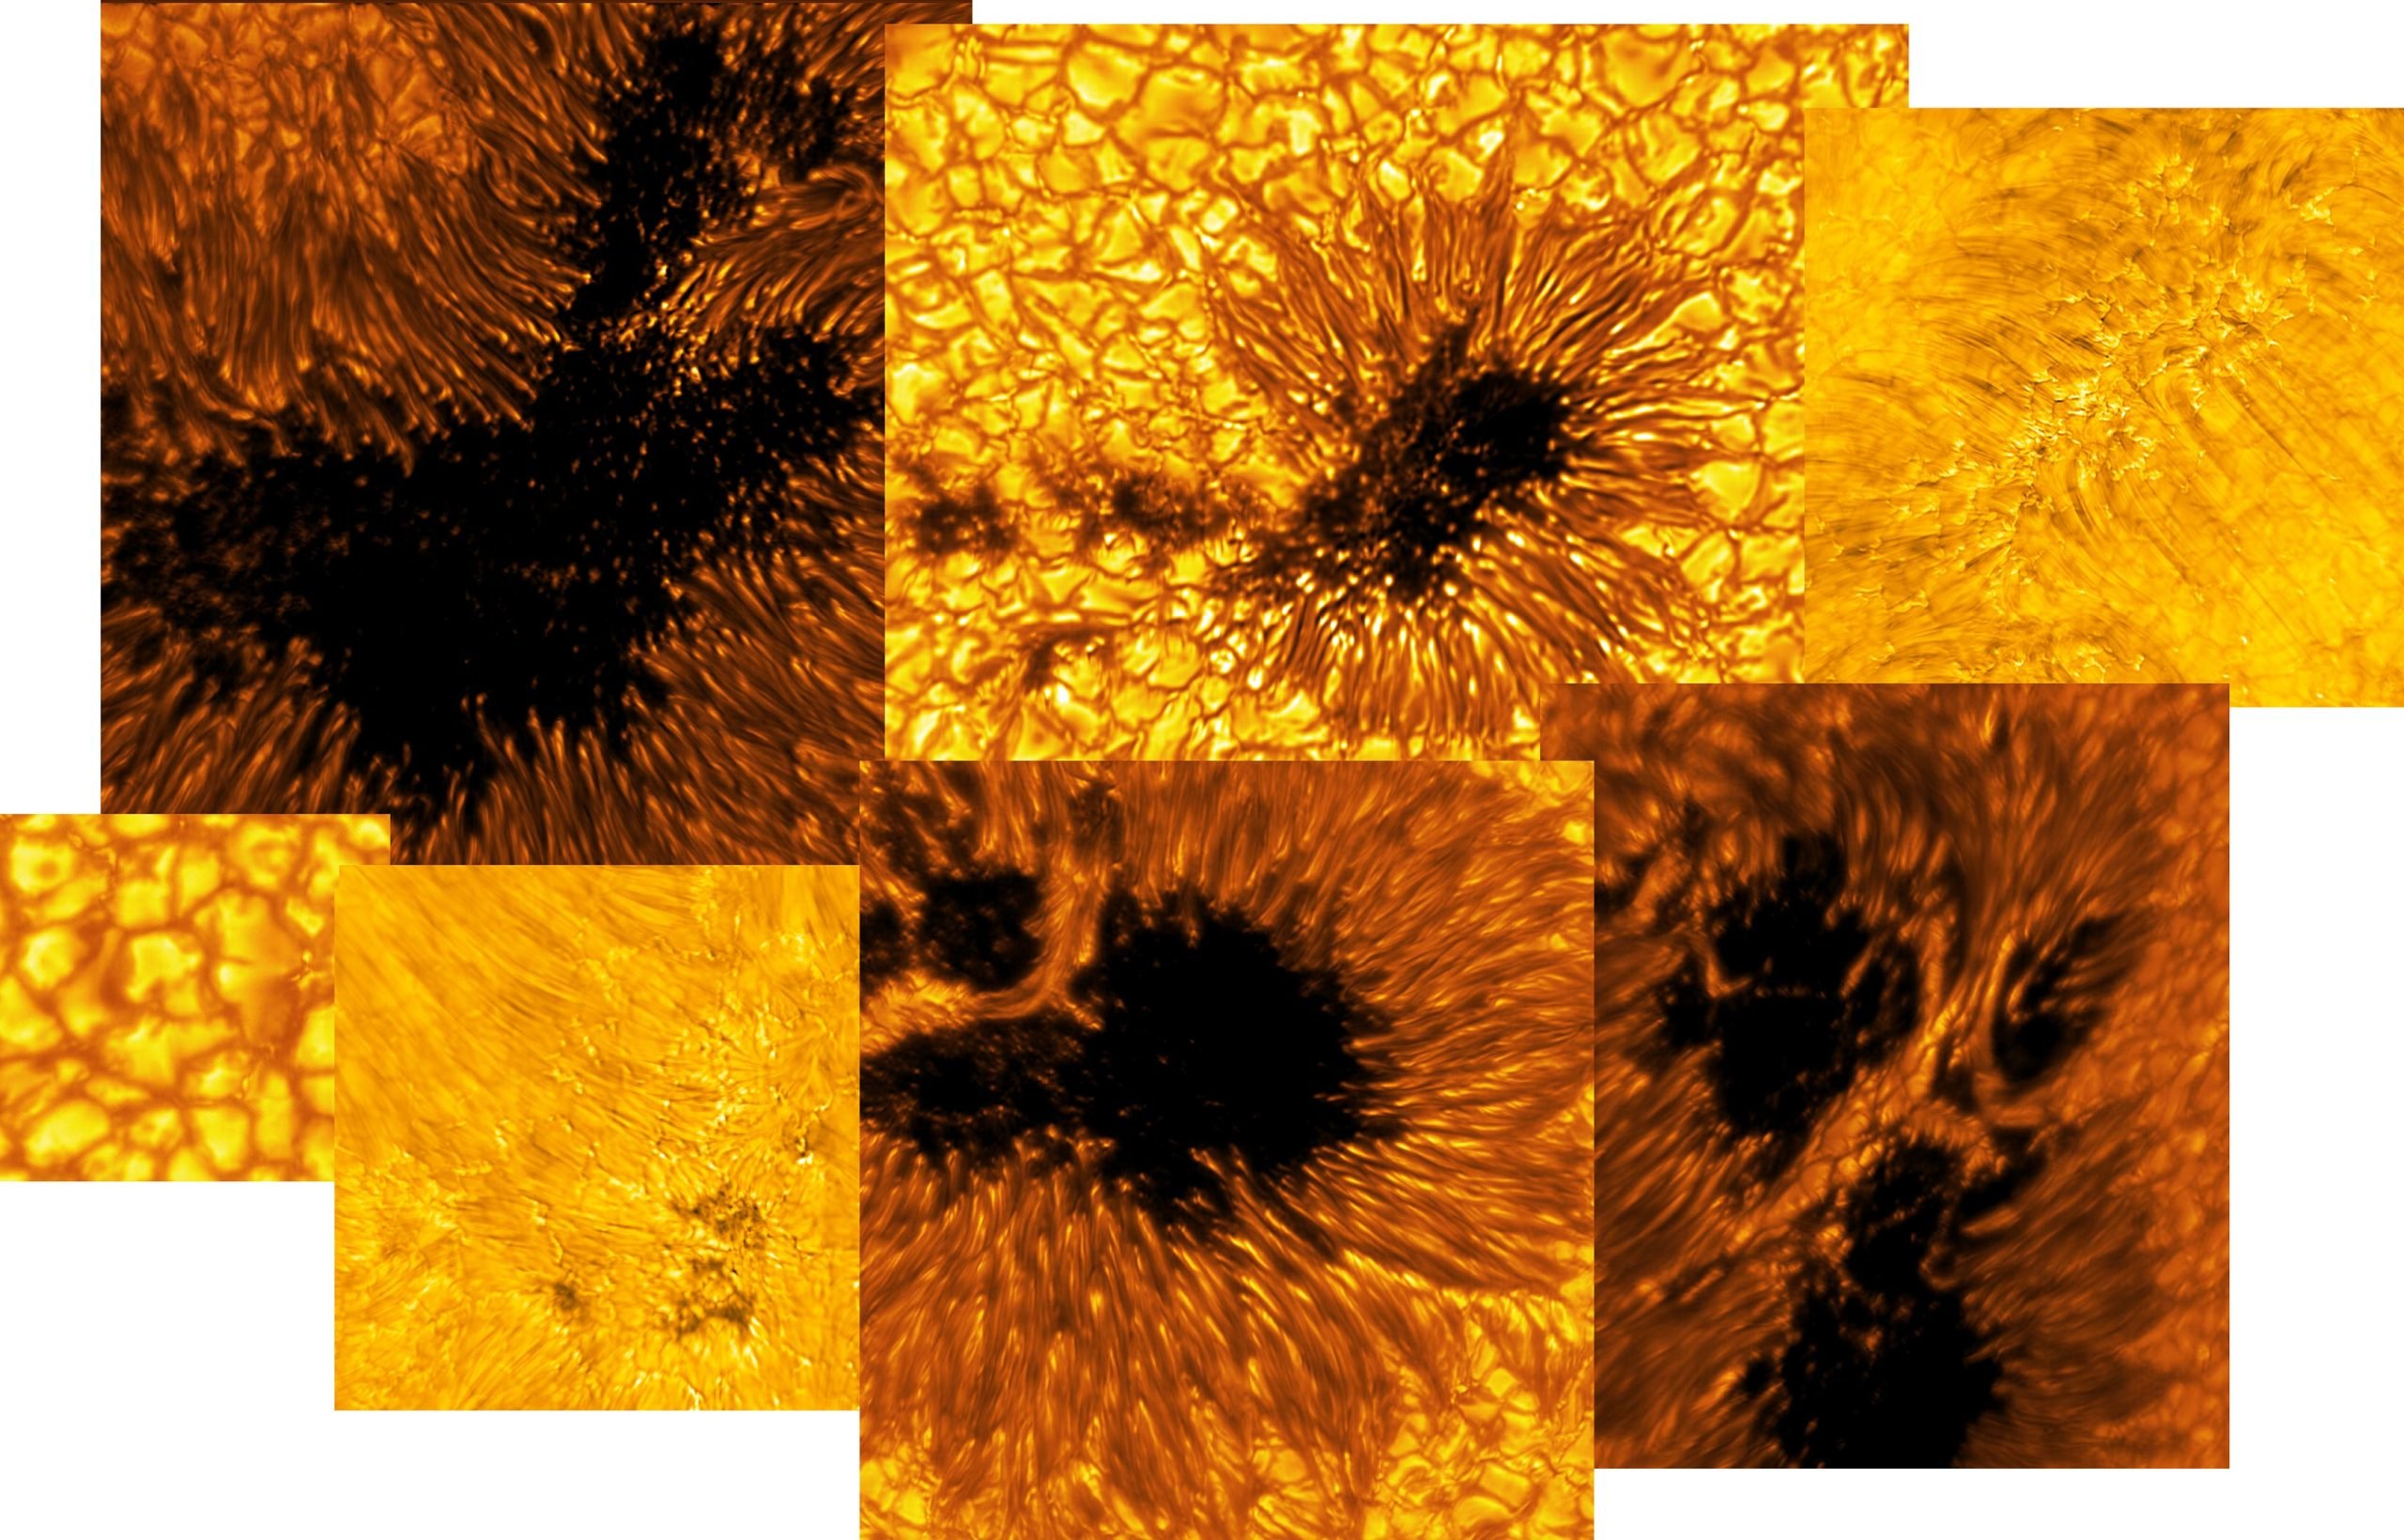 Unglaublich detaillierte Nahaufnahmen der Sonne vom leistungsstärksten Sonnenteleskop der Erde